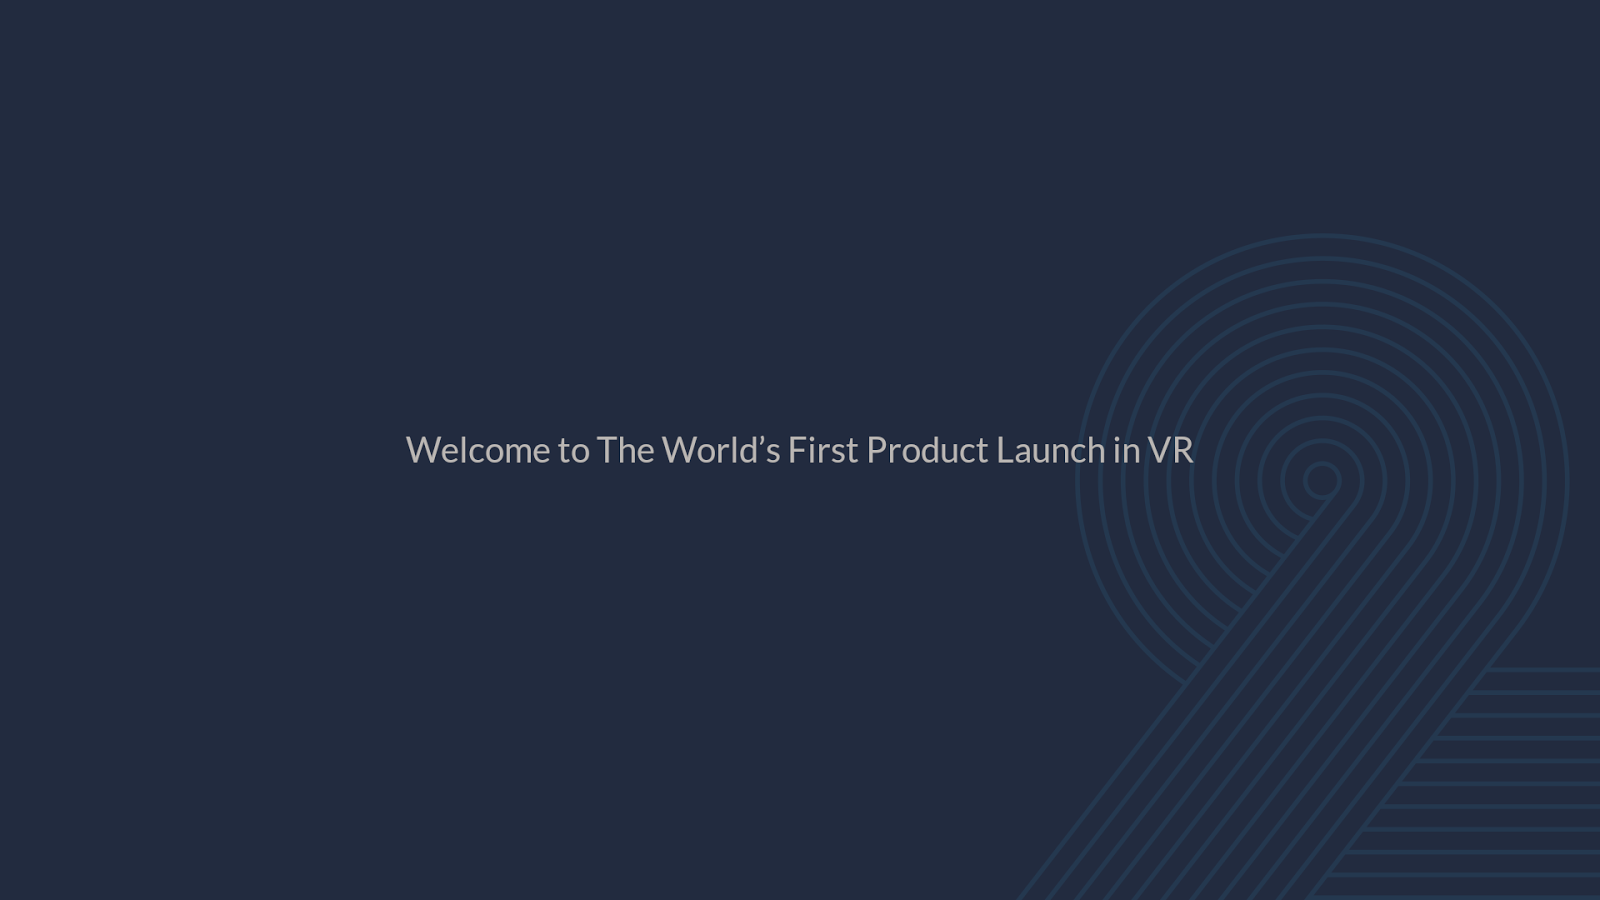 一加2虚拟现实发布会:OnePlus 2 VR Launch